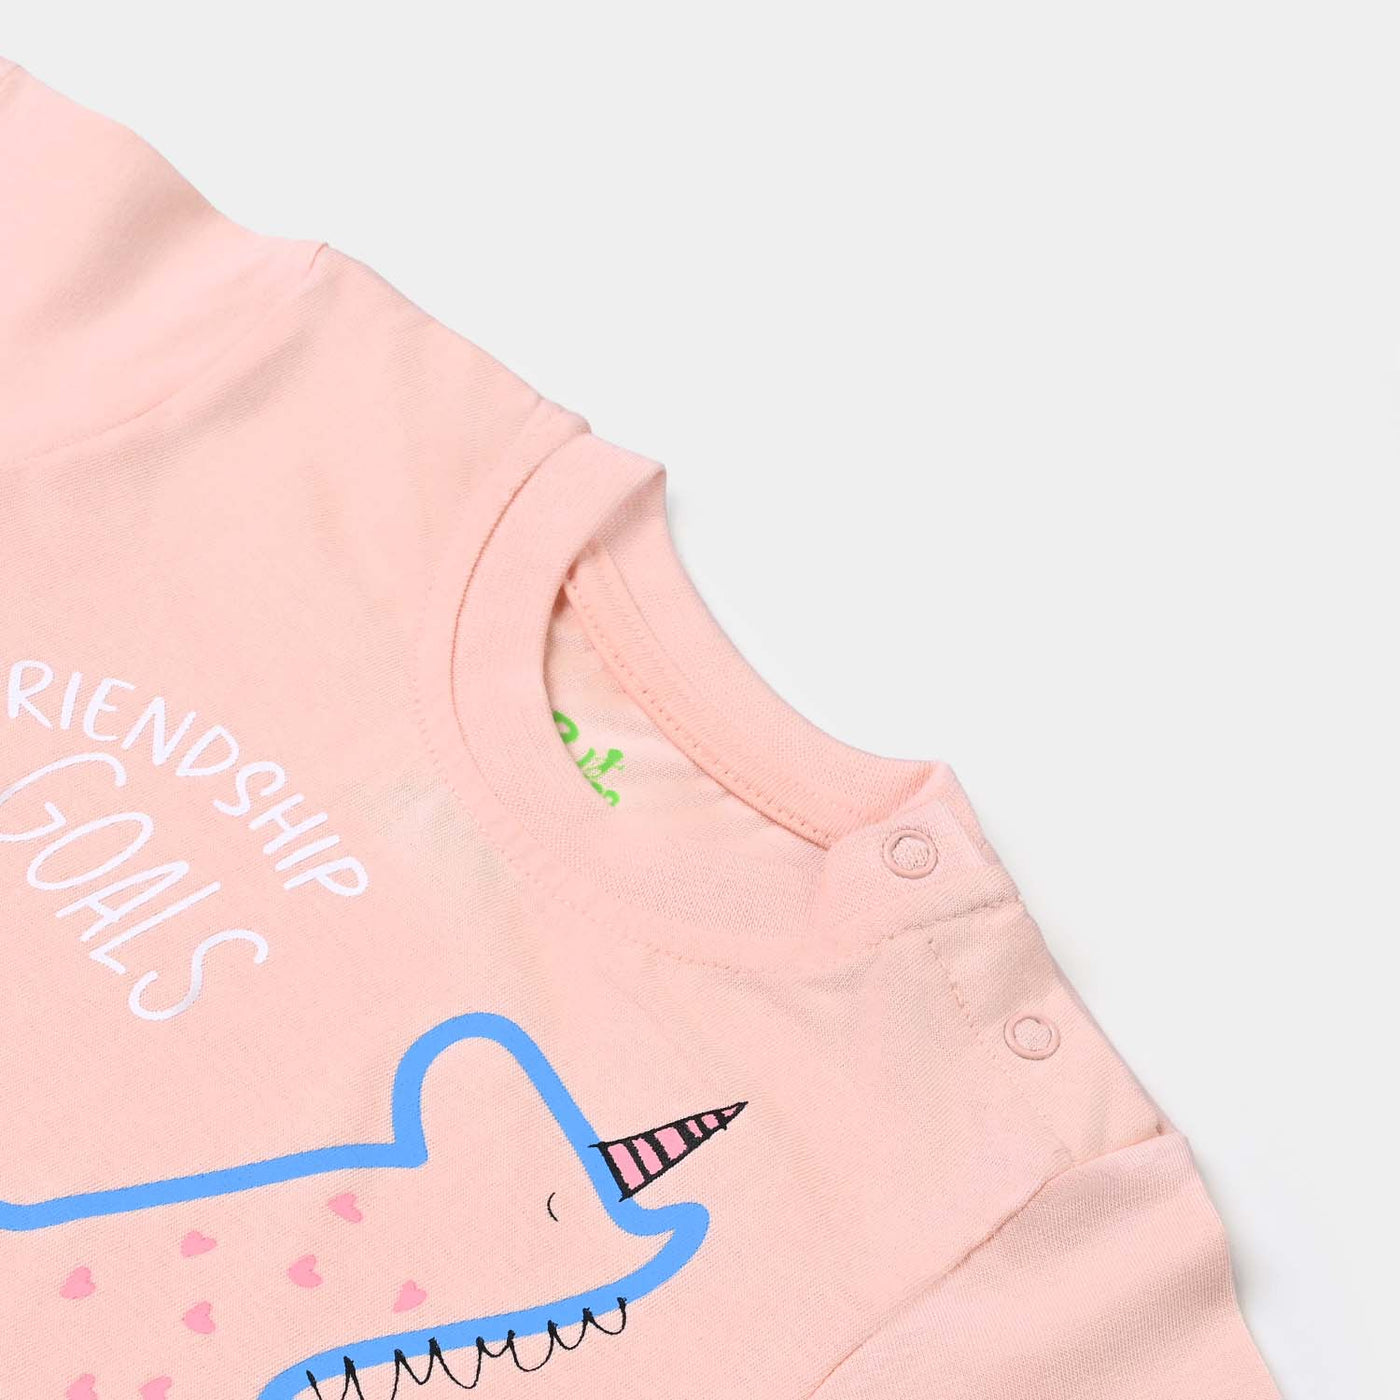 Infant Girls Cotton Jersey T-Shirt Friendship Goals-Pink